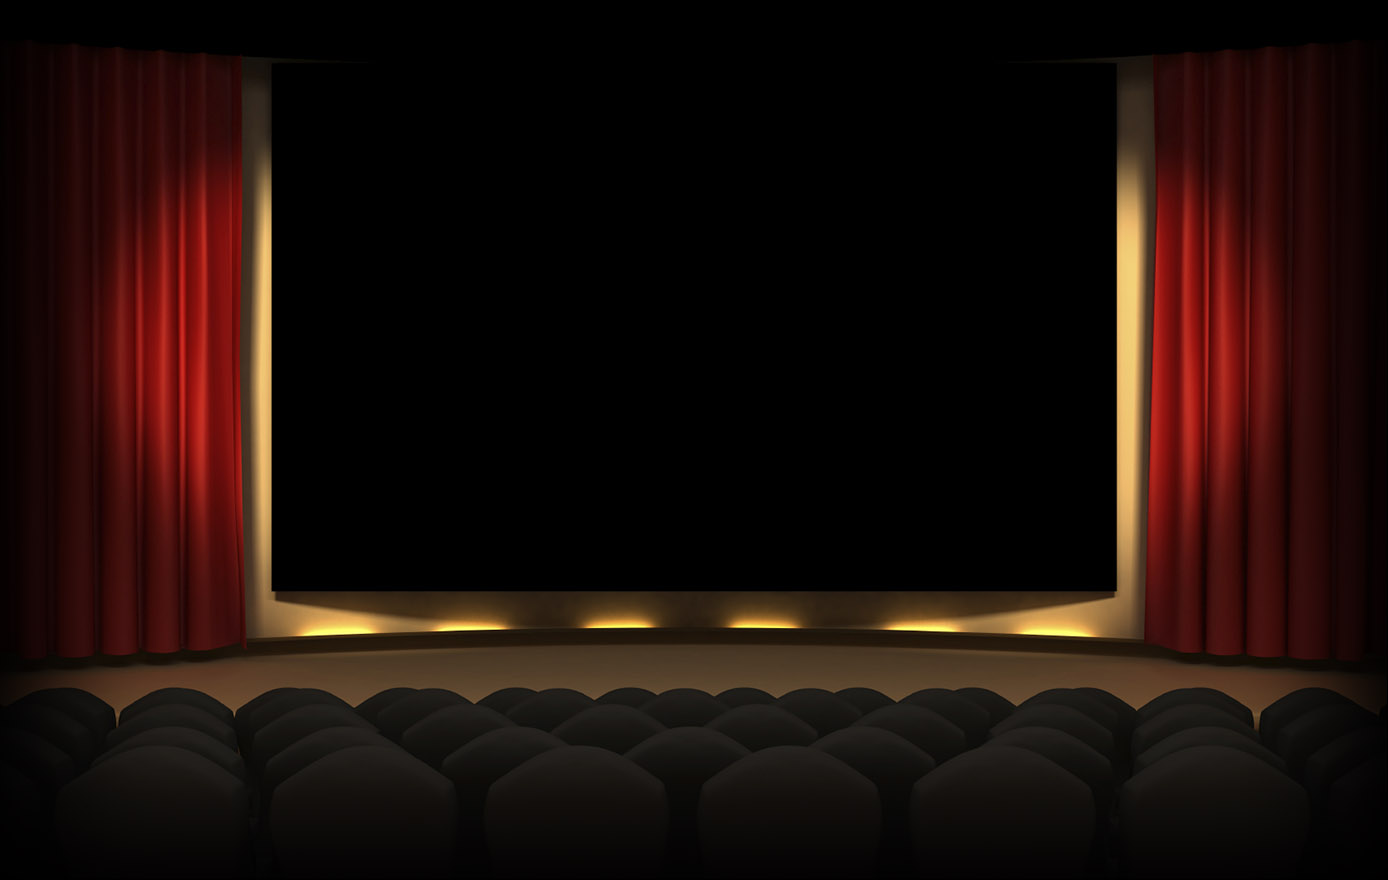 Movie theater background for youtube videos   Slideshows AV Shows